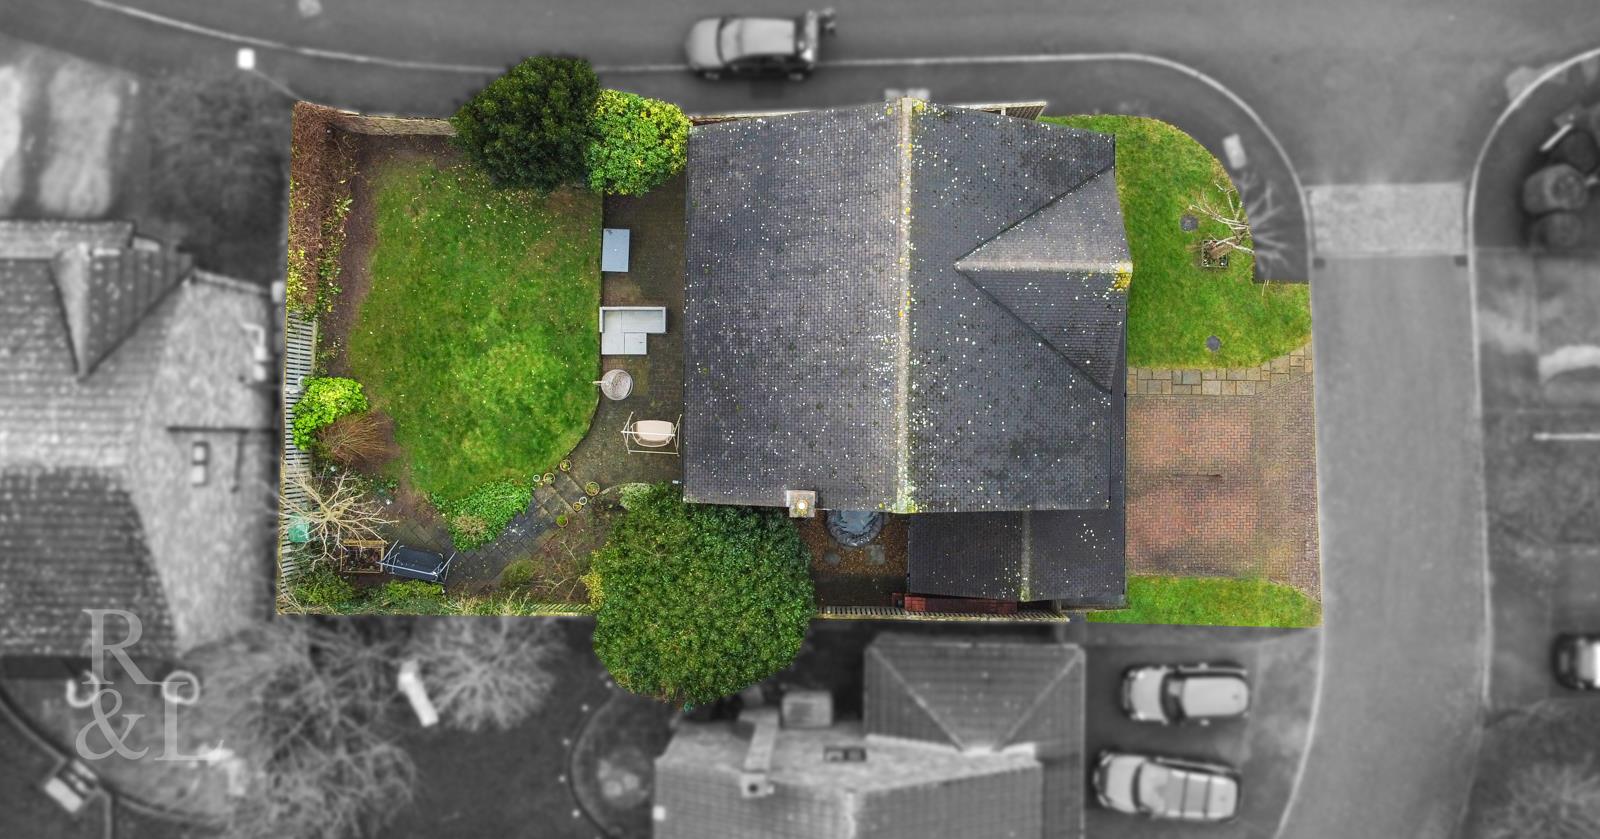 Property image for Harston Gardens, West Bridgford, Nottingham